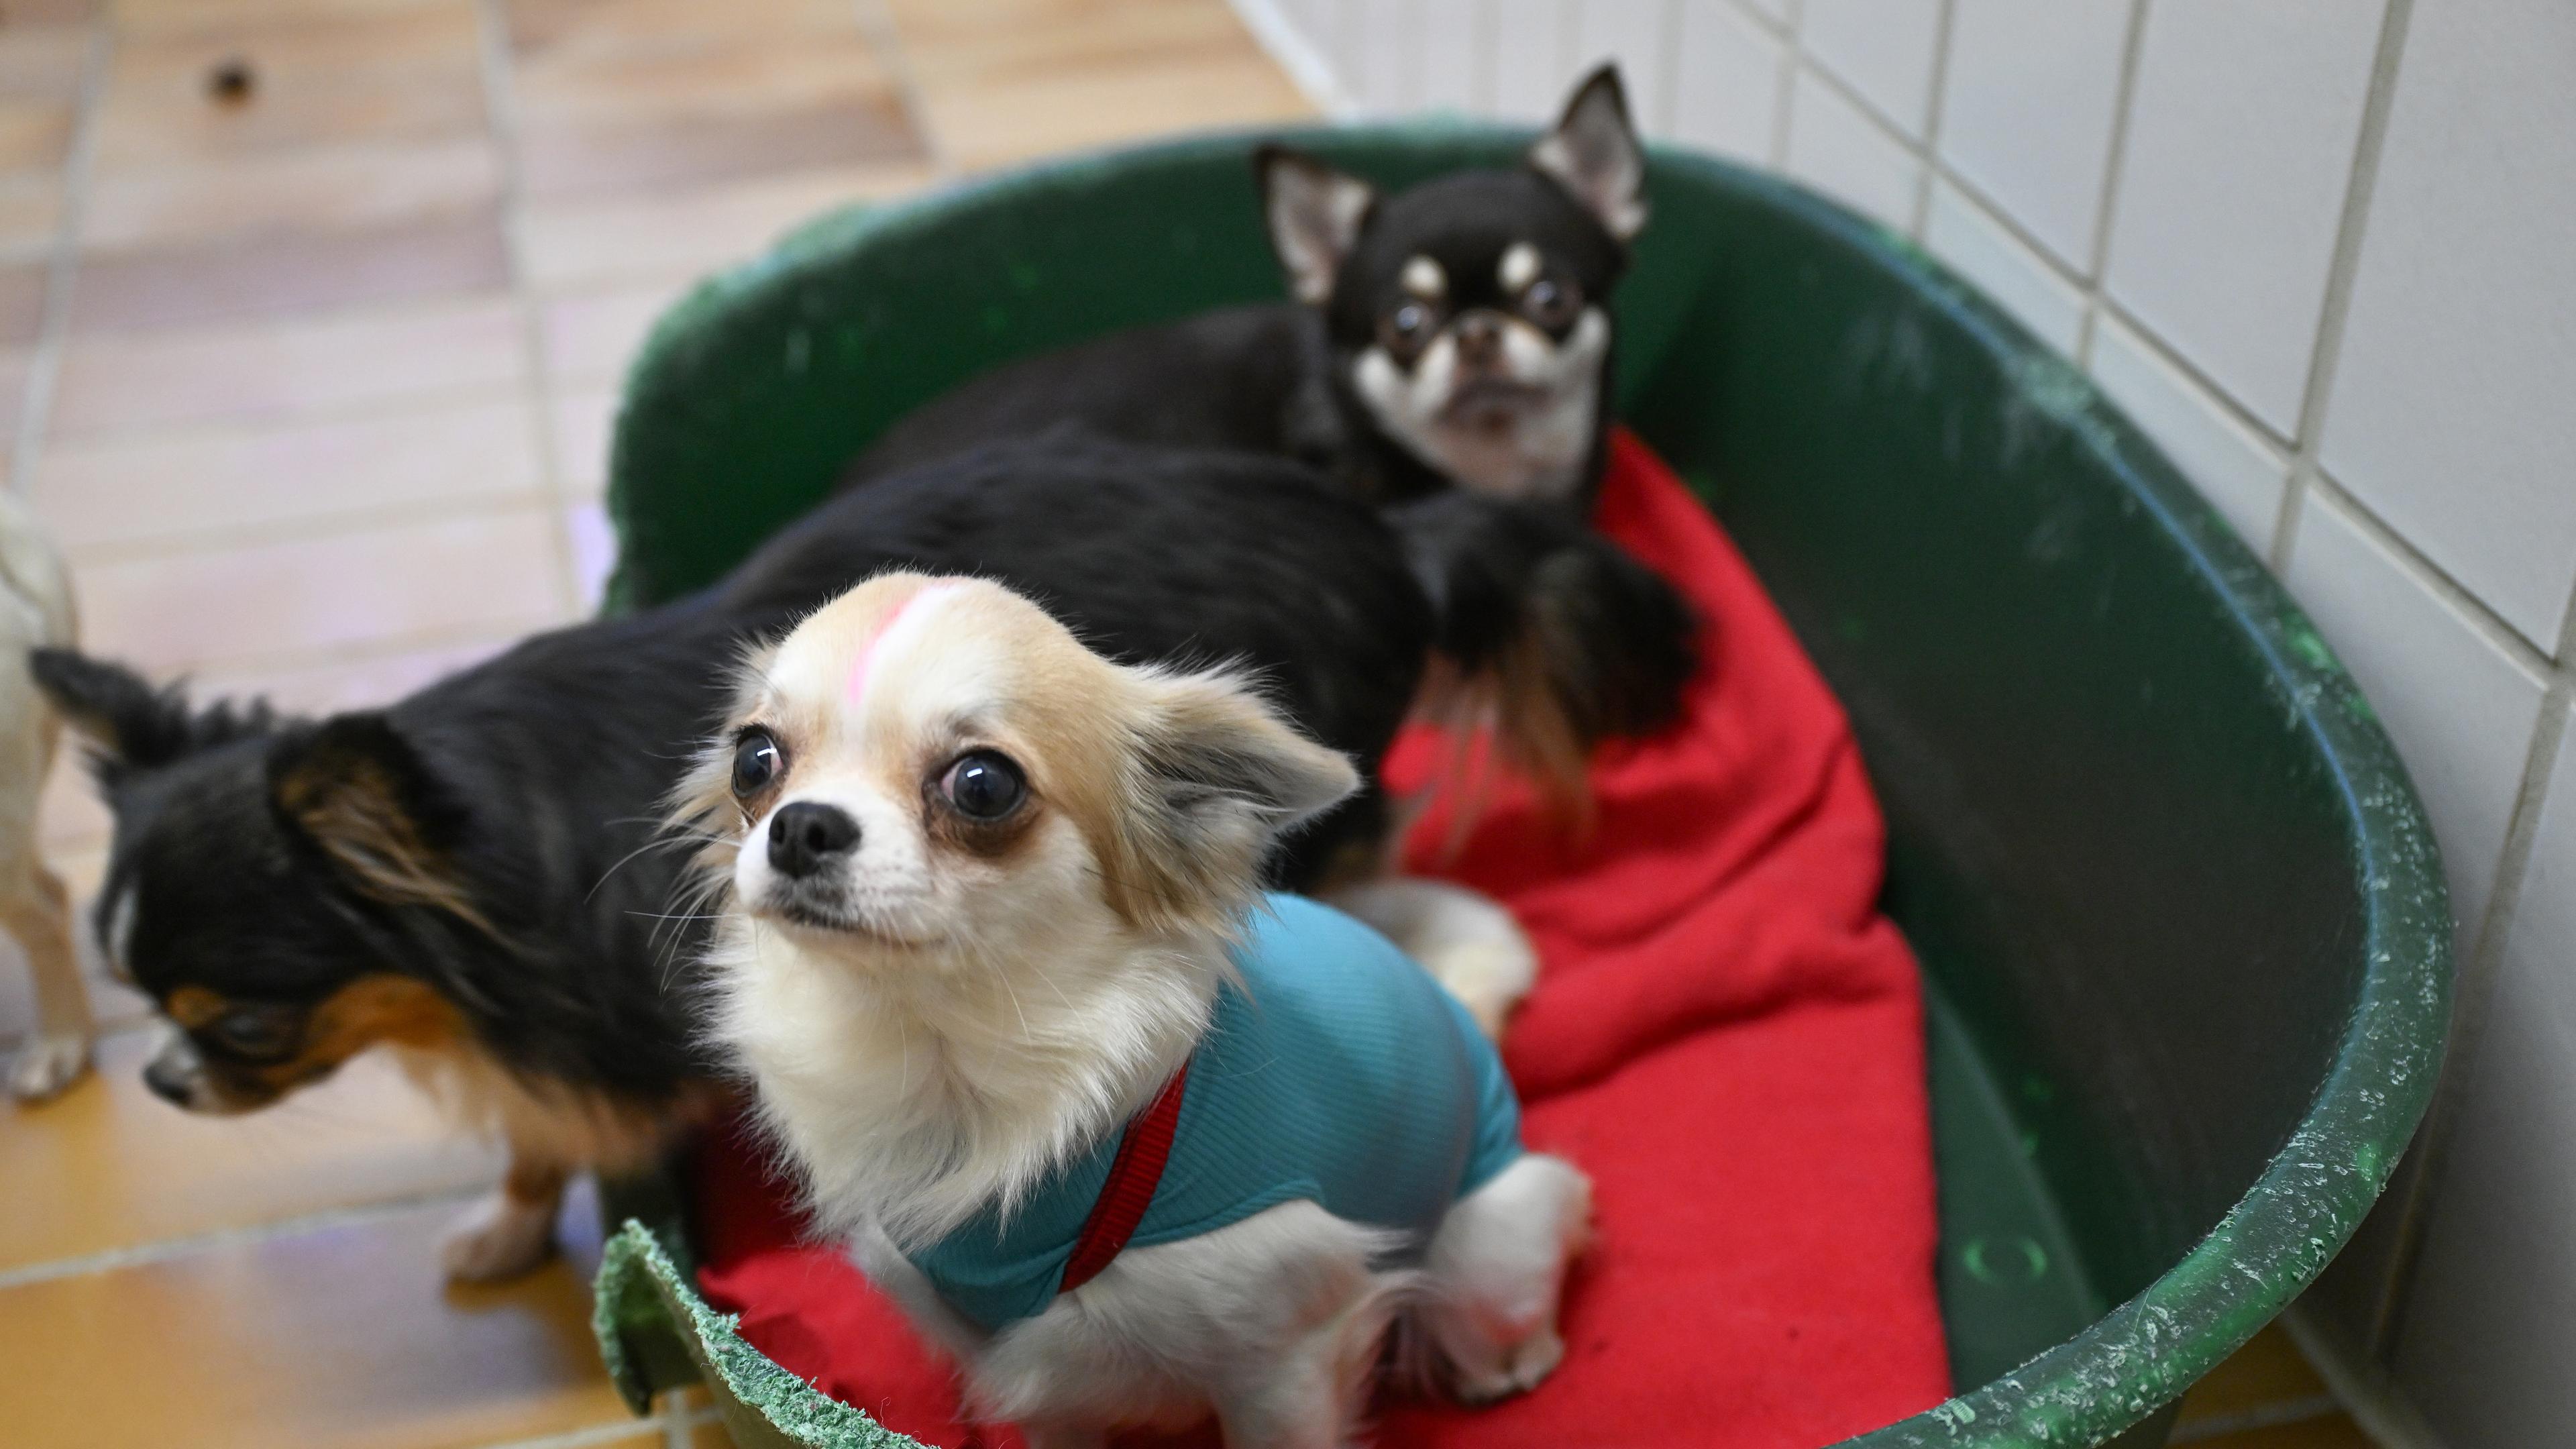  Baden-Württemberg, Stuttgart: Gerettete Chihuahua Hunde aus einem Fall von "animal hoarding" (pathologisches Horten von Tieren) sind im Tierheim Stuttgart untergebracht und werden von hier an neue verantwortungsvolle Besitzer verteilt.